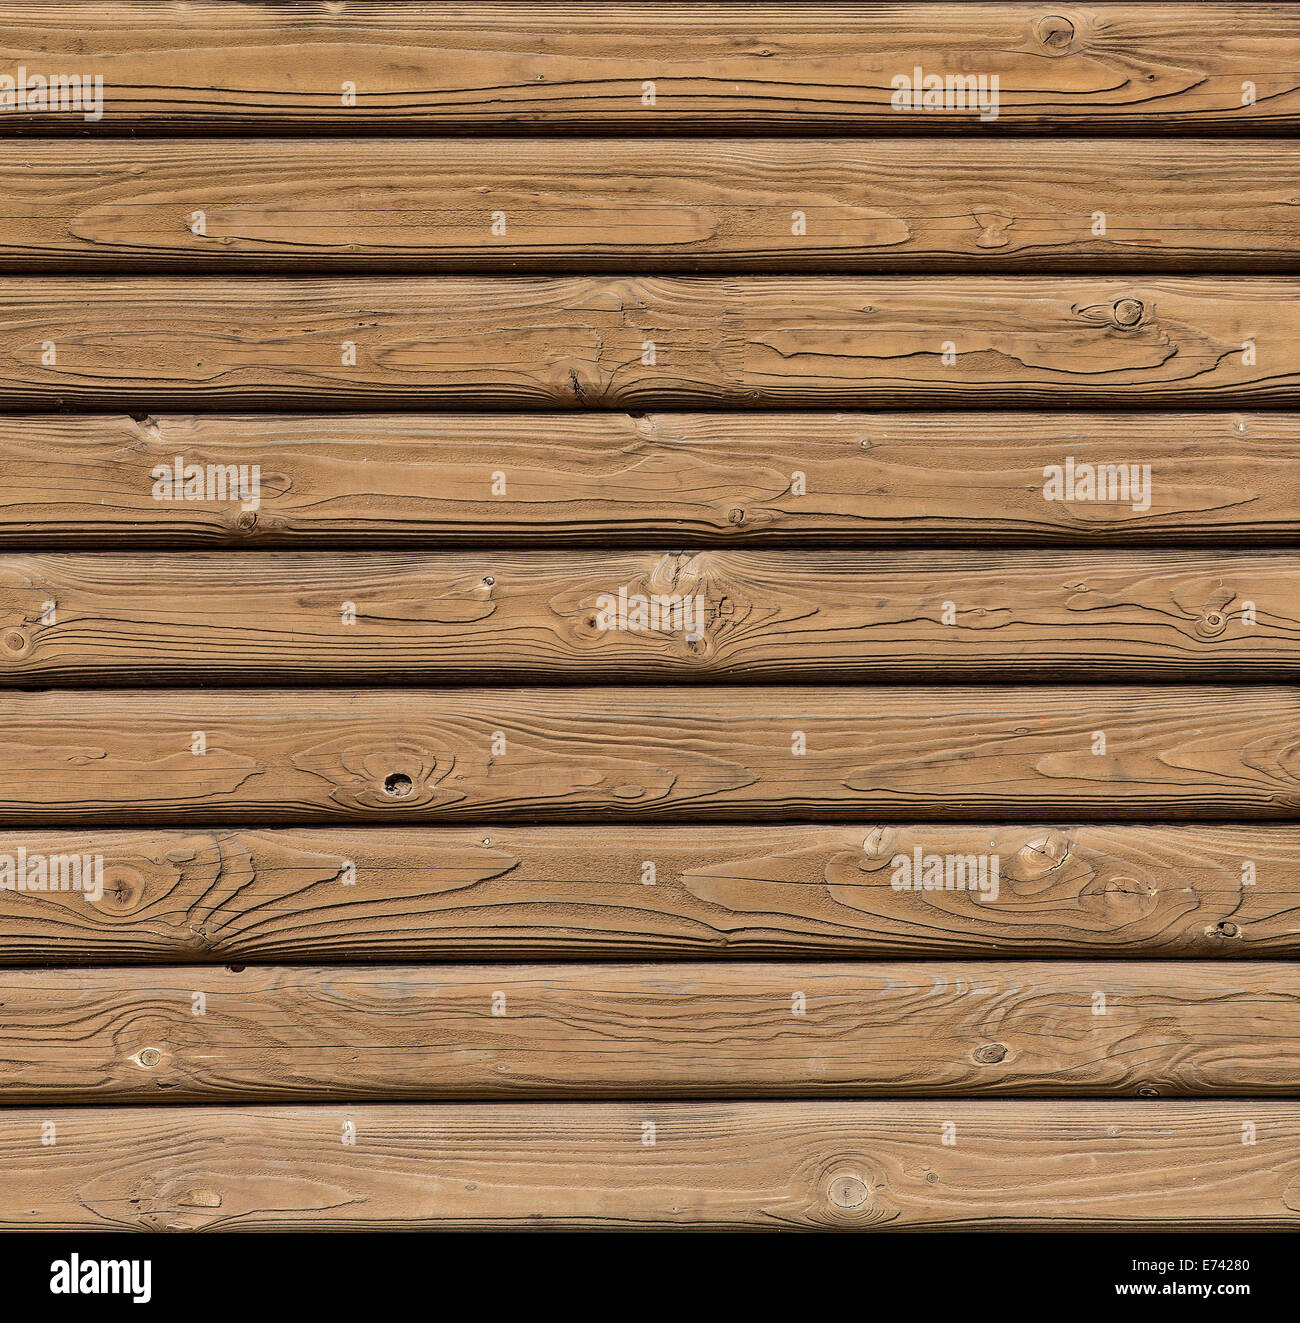 Wood planks background Stock Photo